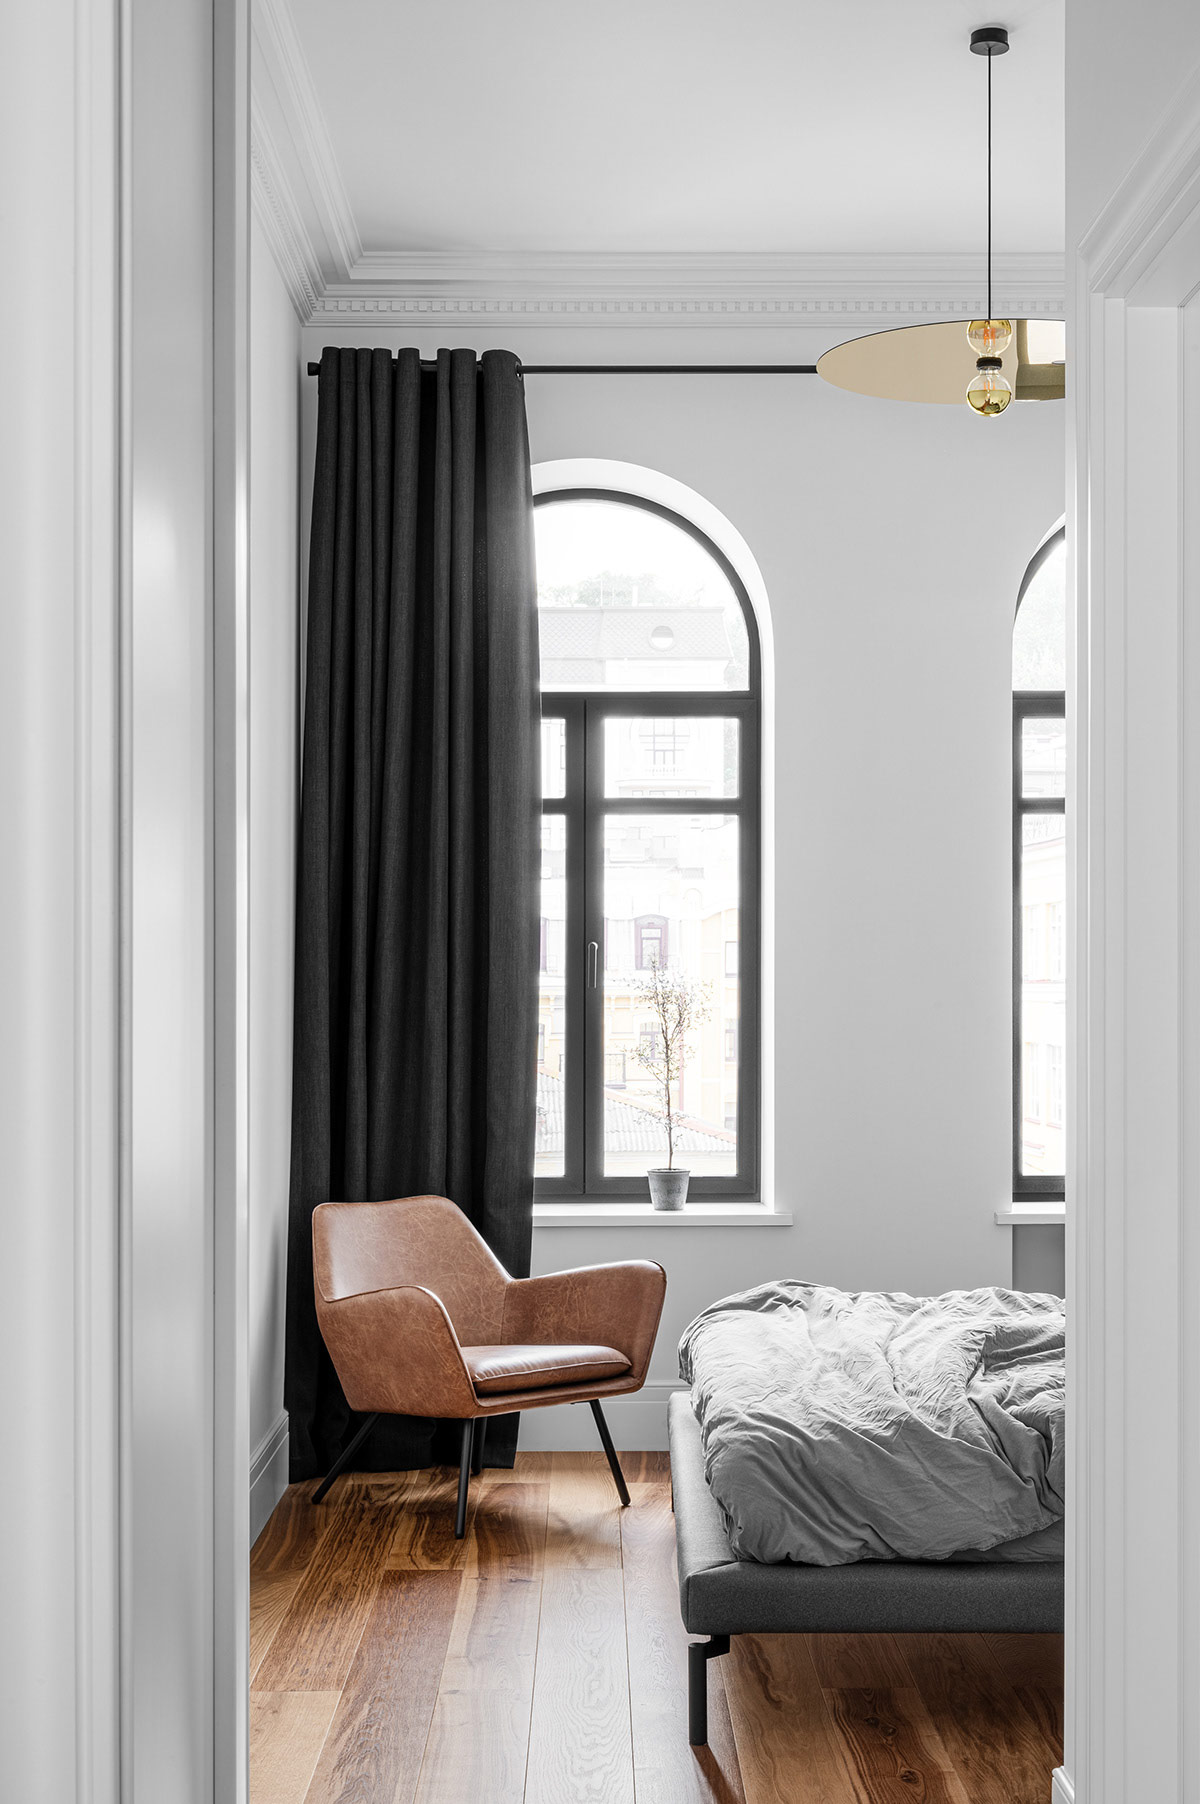 Ghế da màu nâu tương phản với rèm cửa và khung cửa sổ hình vòm màu đen. Đèn thả mặt dây chuyền màu vàng sáng bóng giúp làm ấm căn phòng về mặt thị giác.